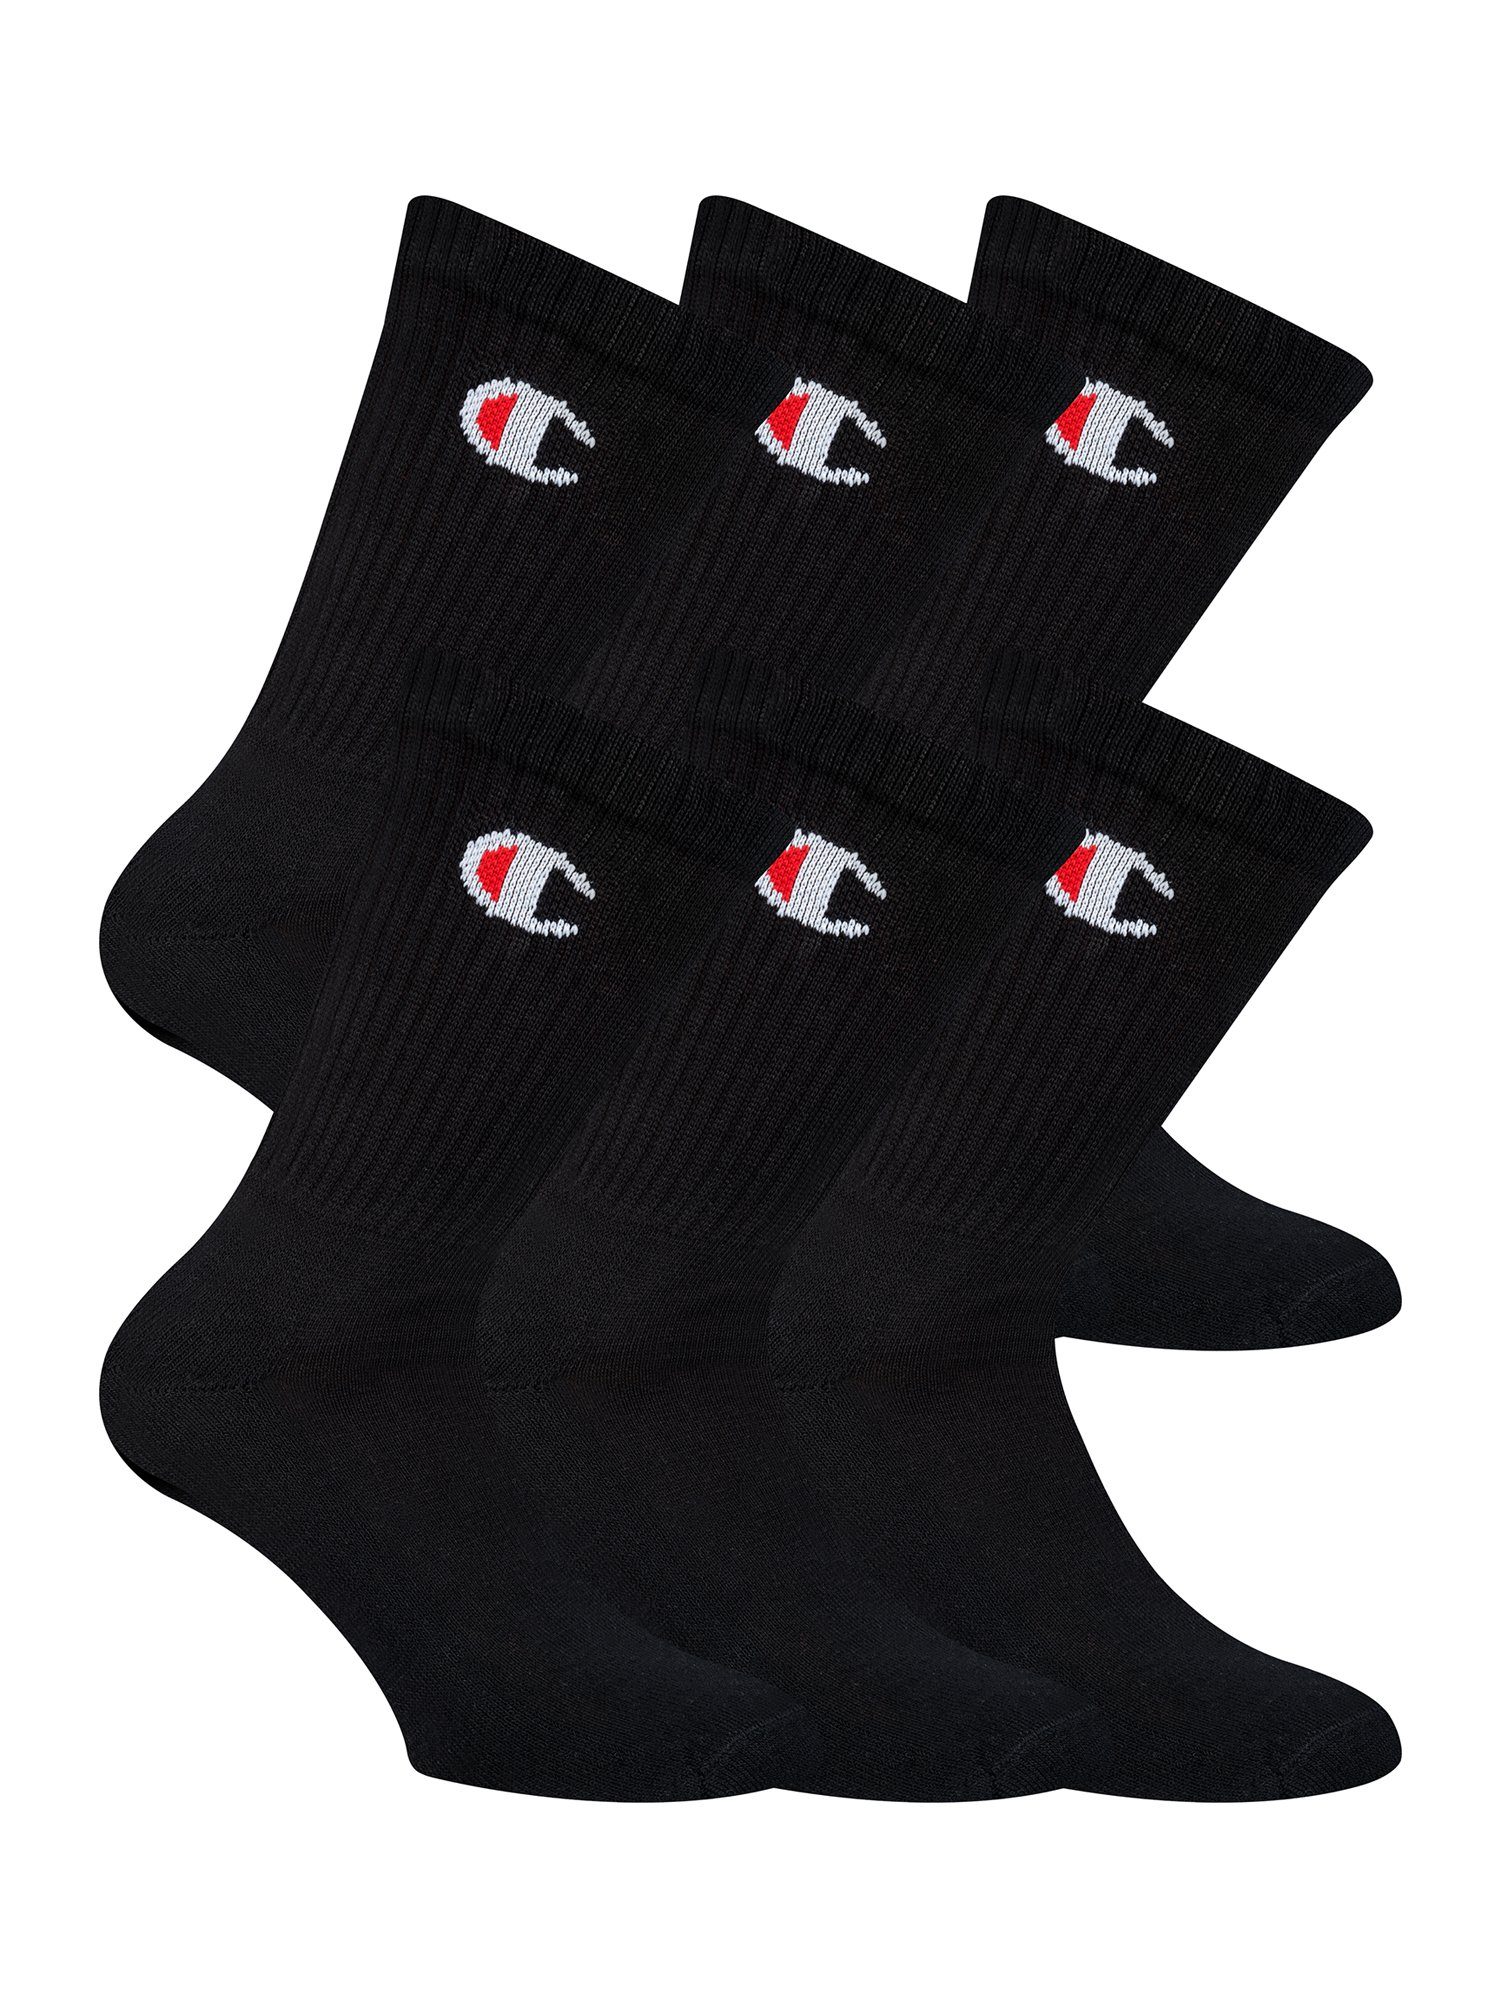 Champion Socken Herren online kaufen | OTTO